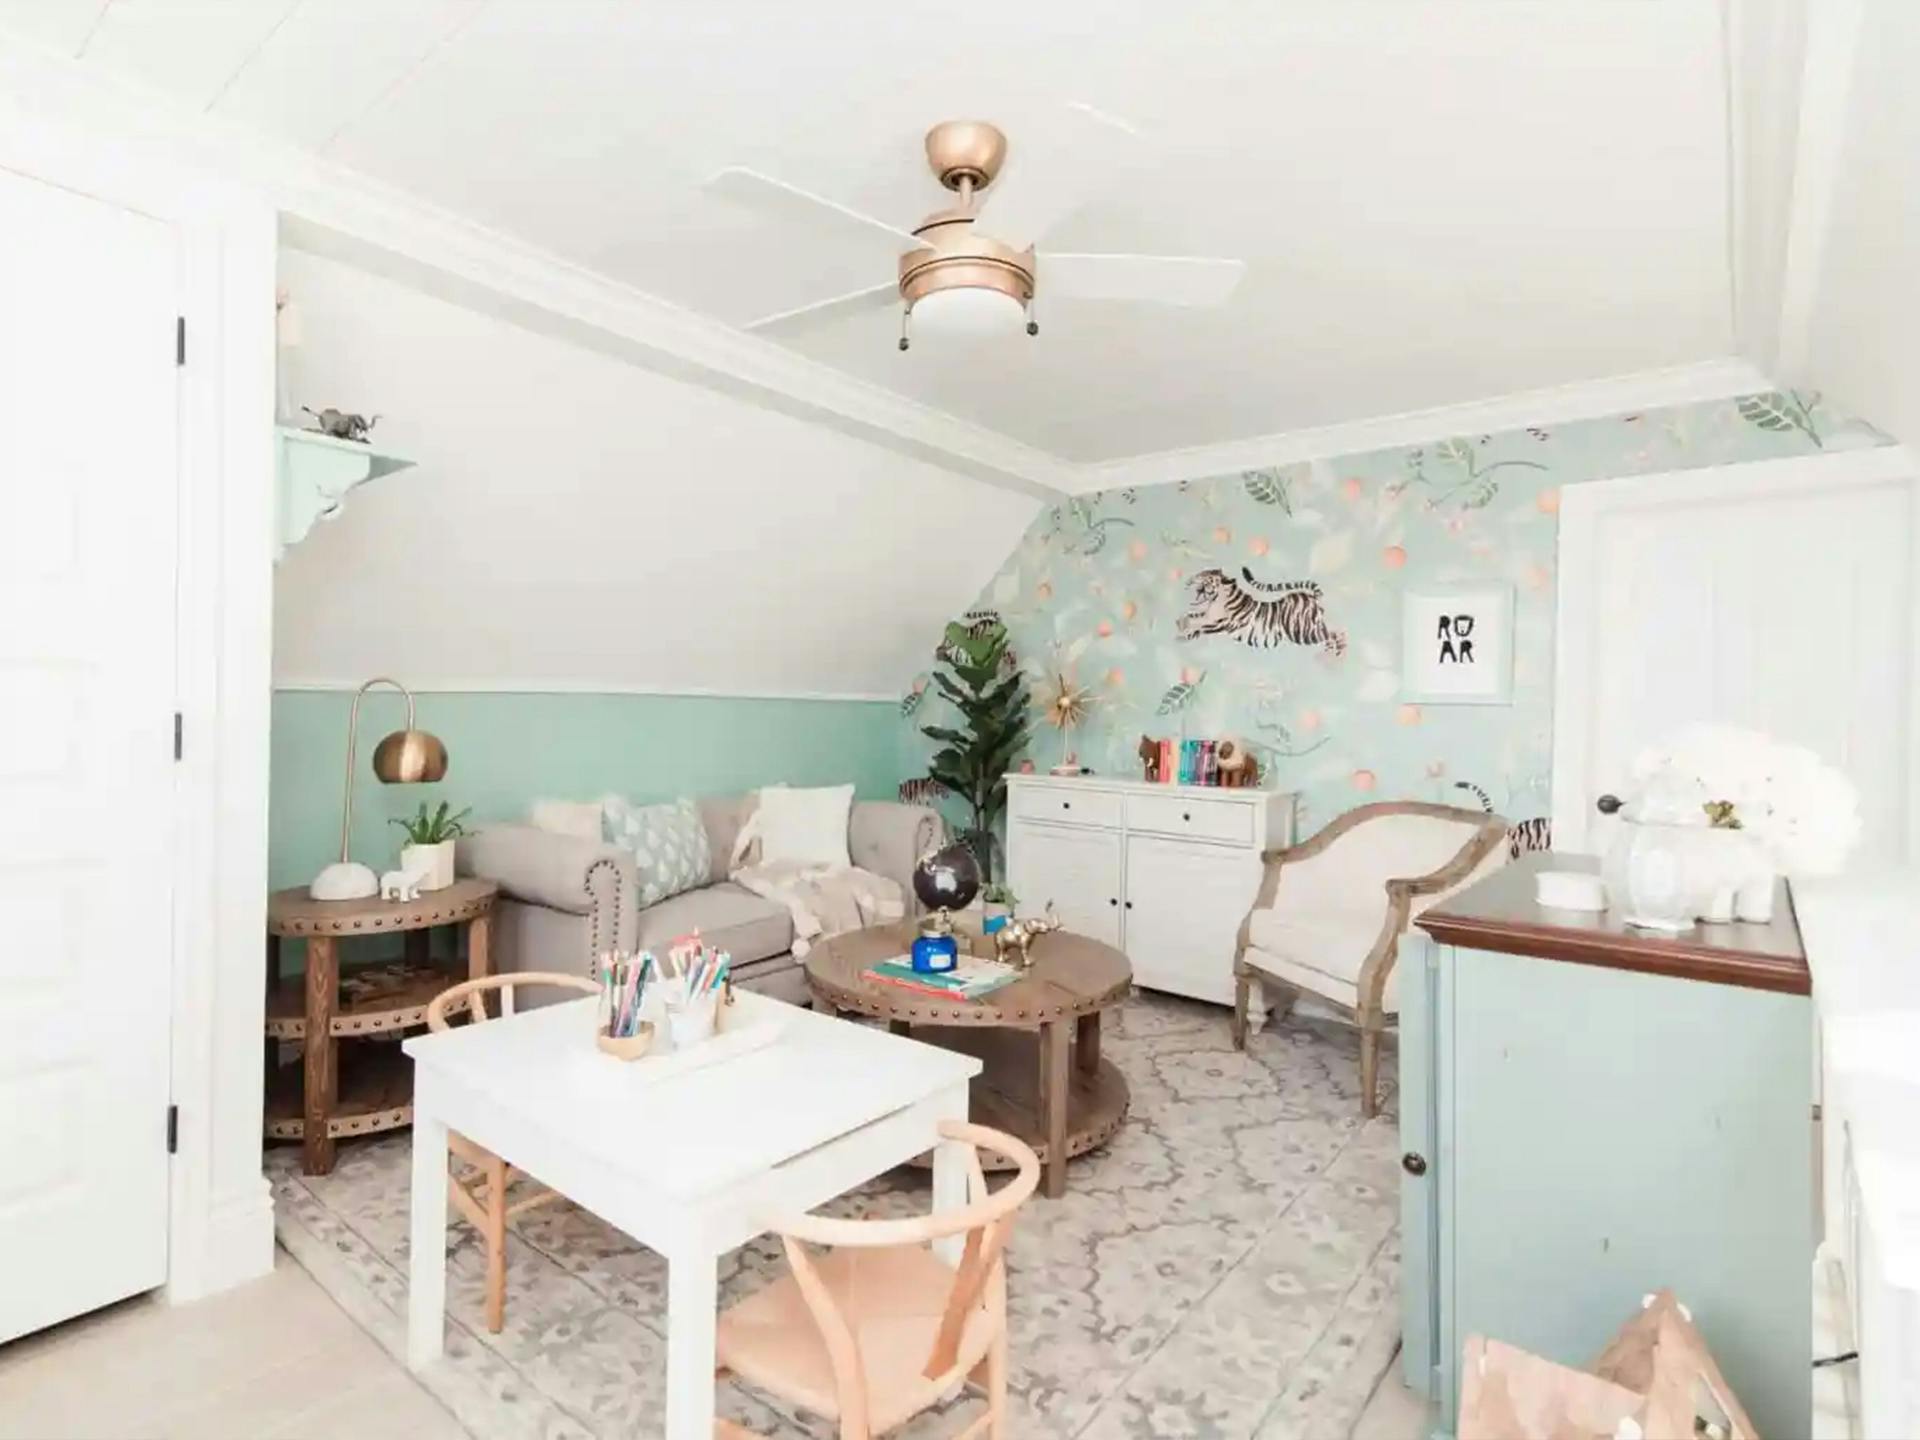 Ashley Wilson's Minty green den featuring a Kichler ceiling fan